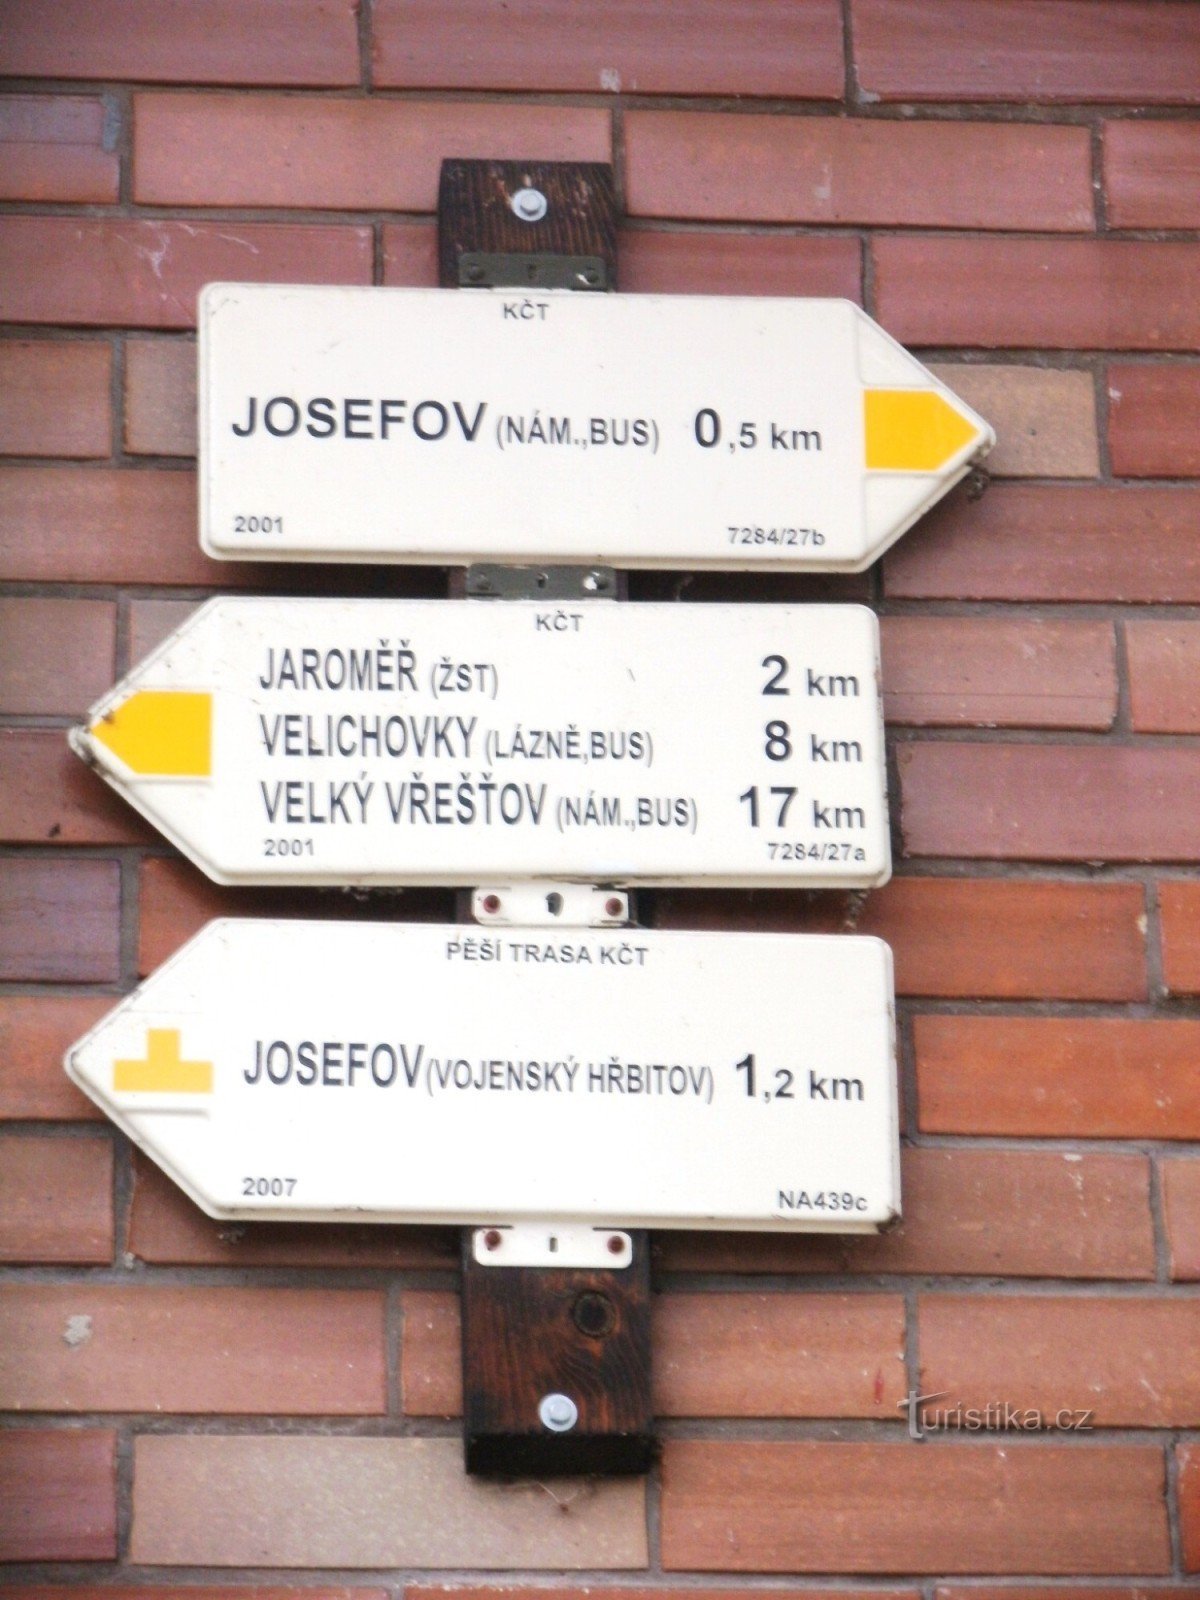 τουριστικό σταυροδρόμι Josefov - είσοδος στο υπόγειο